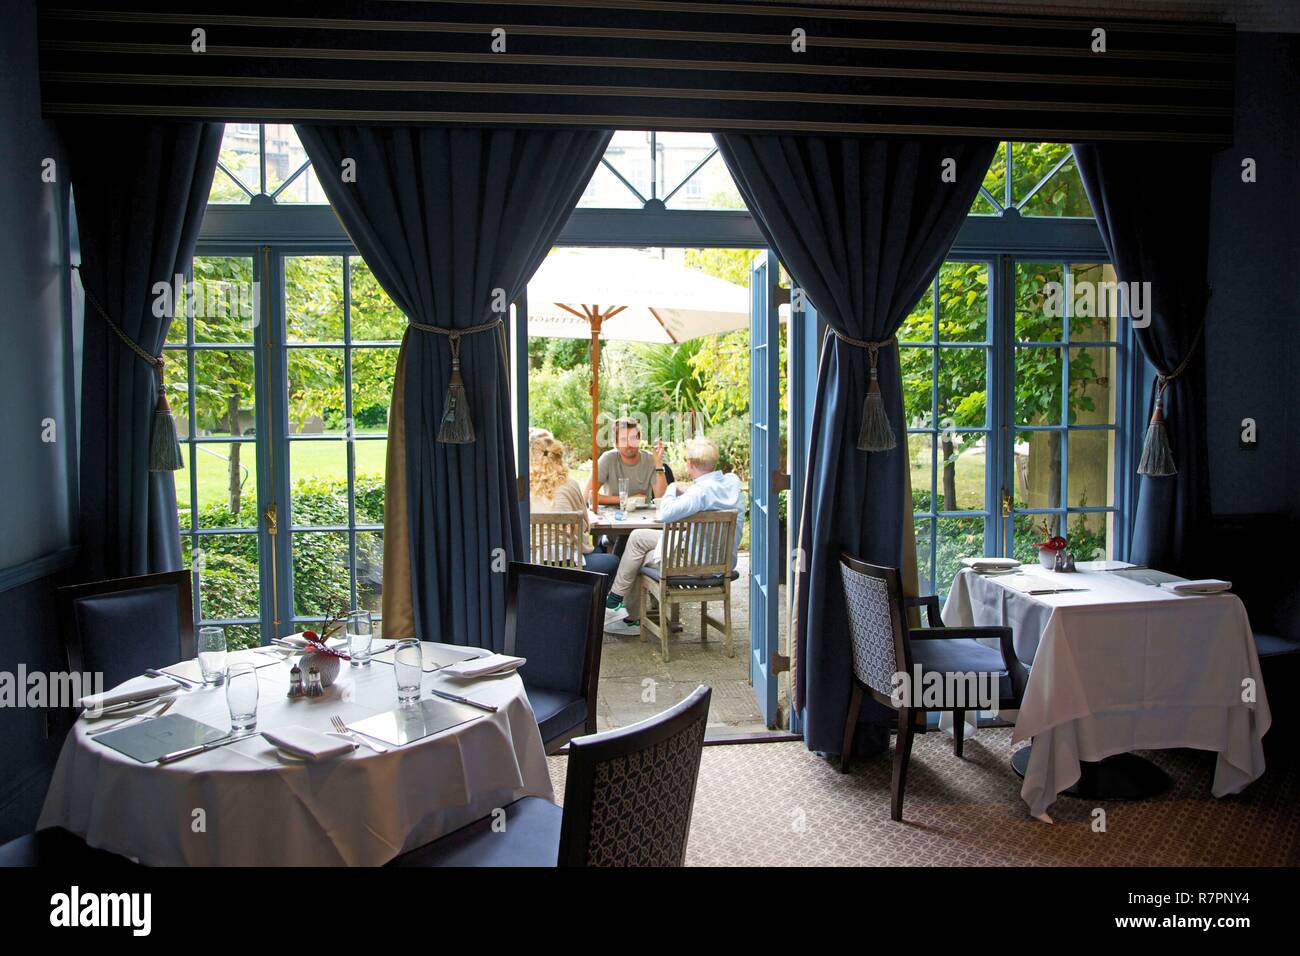 Reino Unido, condado de Somerset, bañera, salón de té en el jardín de la Royal Crescent Hotel Foto de stock